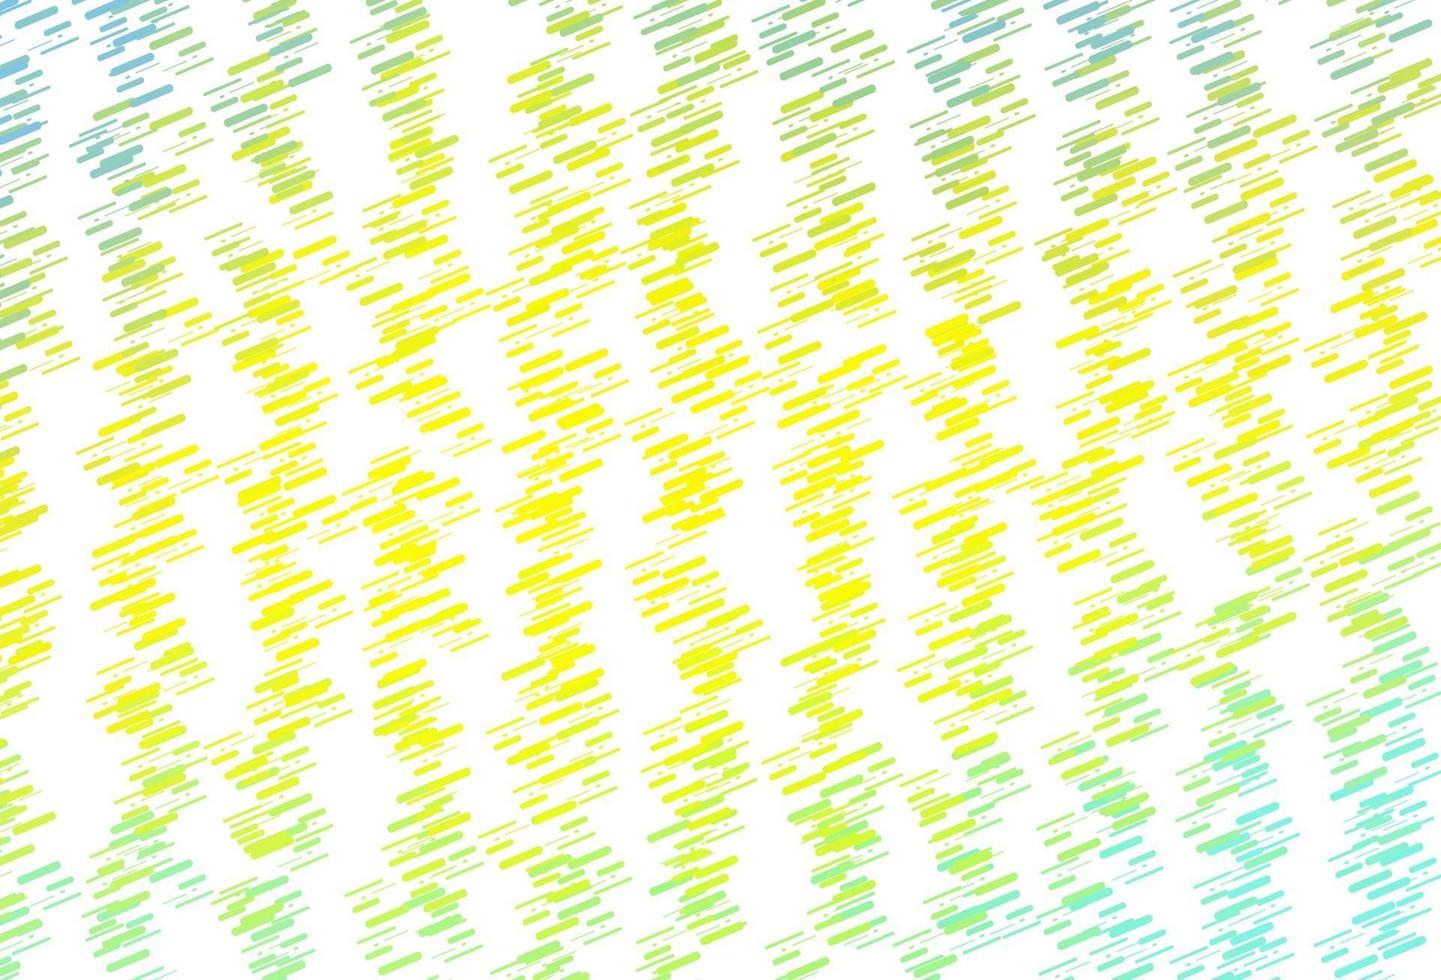 hellgrüner, gelber Vektorhintergrund mit geraden Linien. vektor